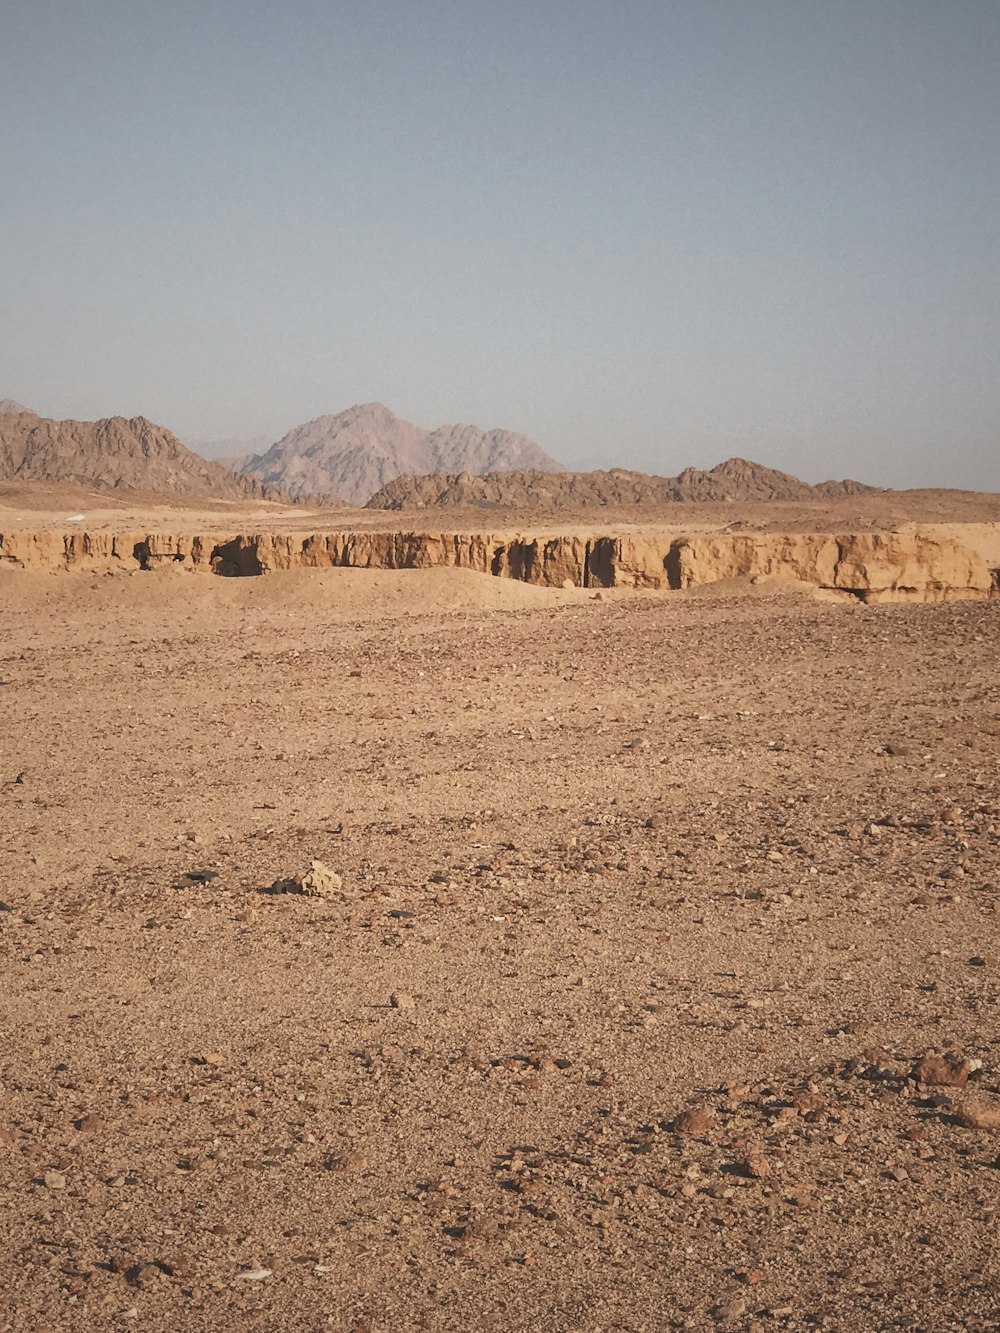 Fotografia de paisagem de um deserto marrom